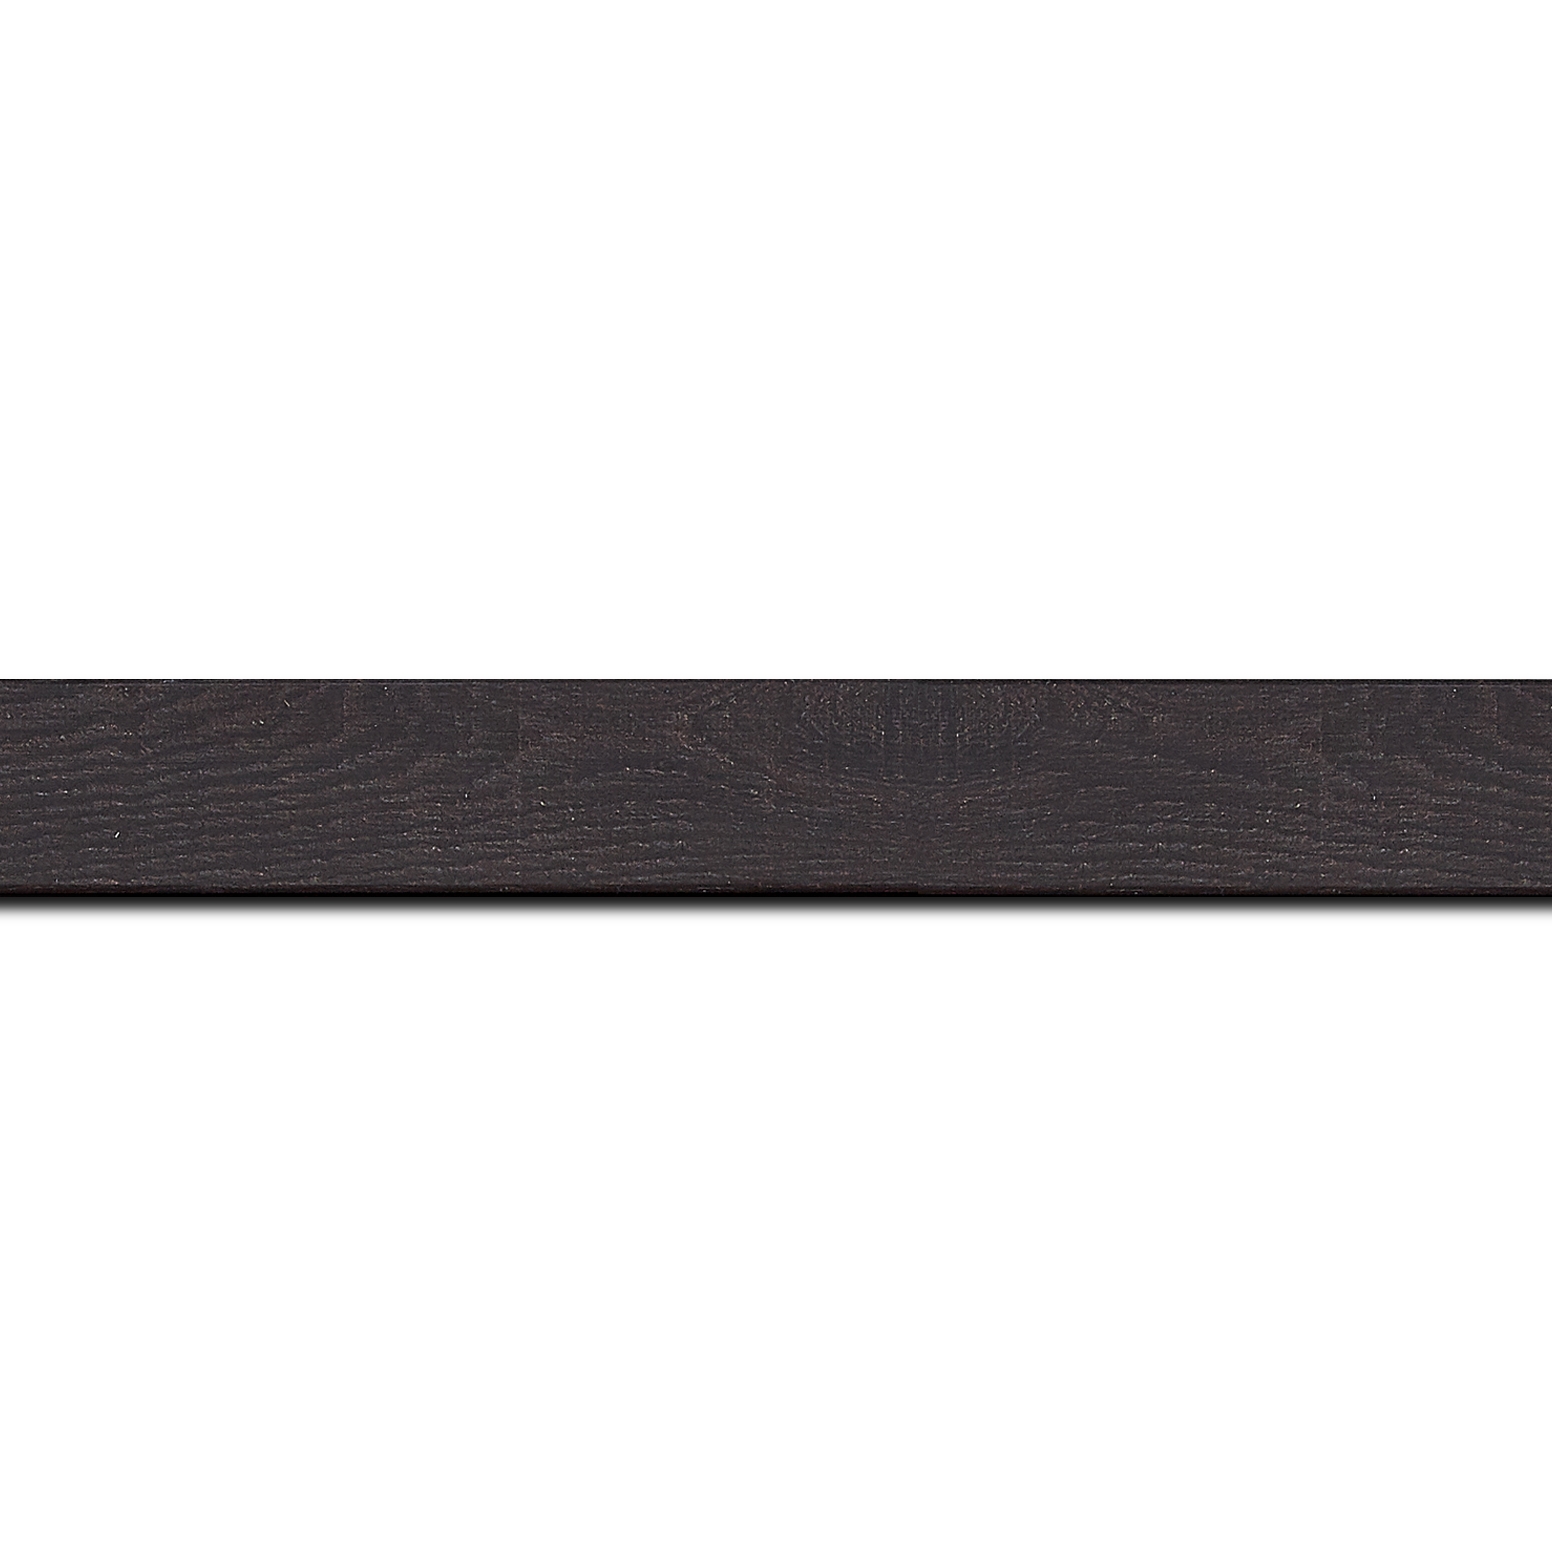 Pack par 12m, bois profil plat largeur 2cm décor bois wengé foncé (longueur baguette pouvant varier entre 2.40m et 3m selon arrivage des bois)